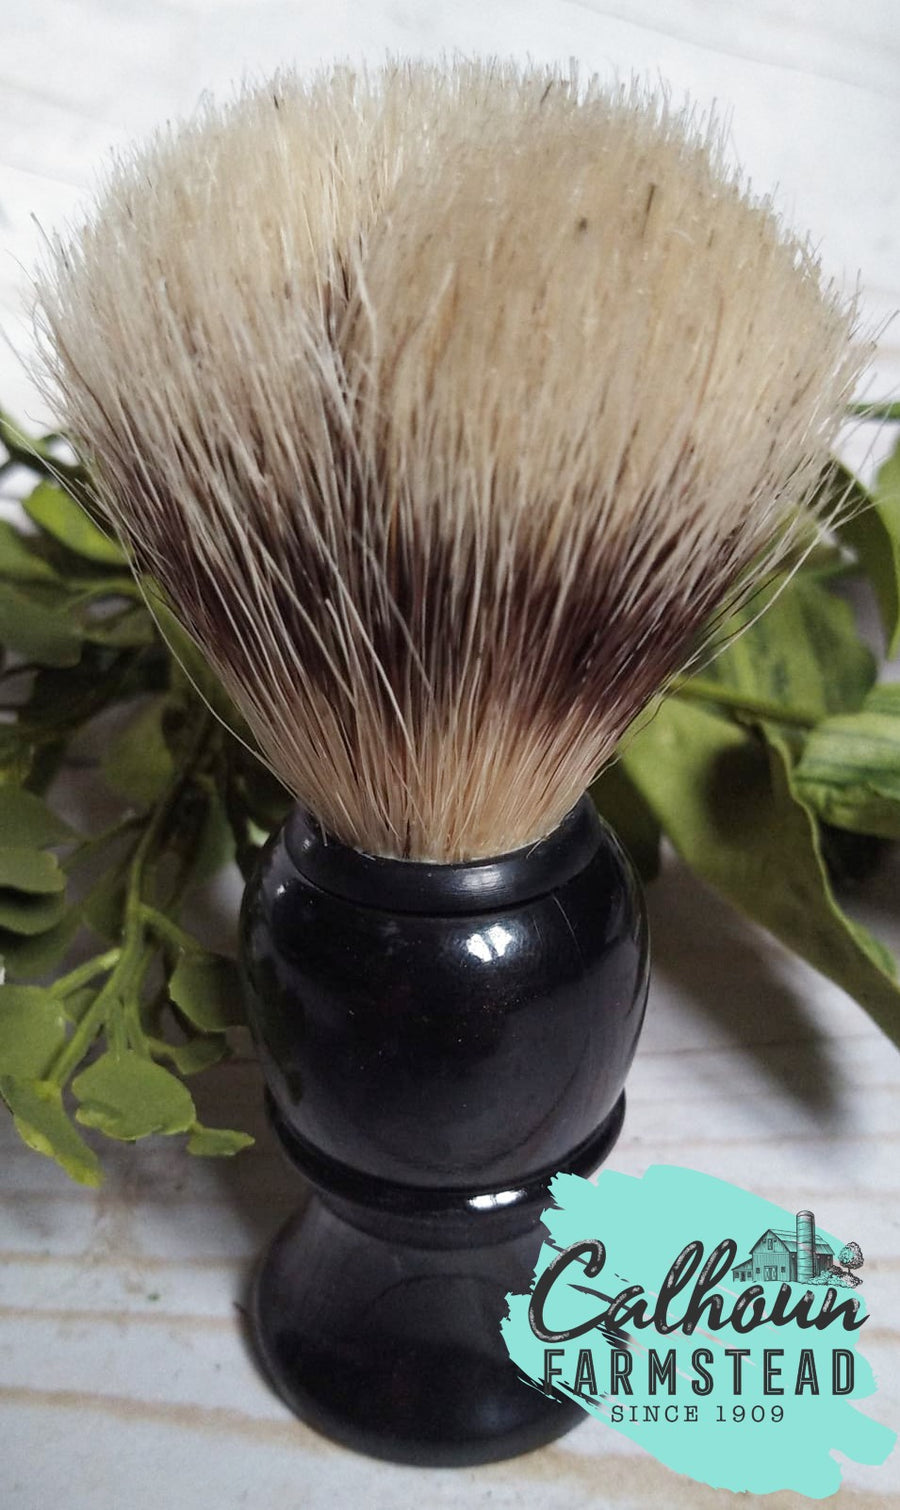 boar hair - bristle - shave brush